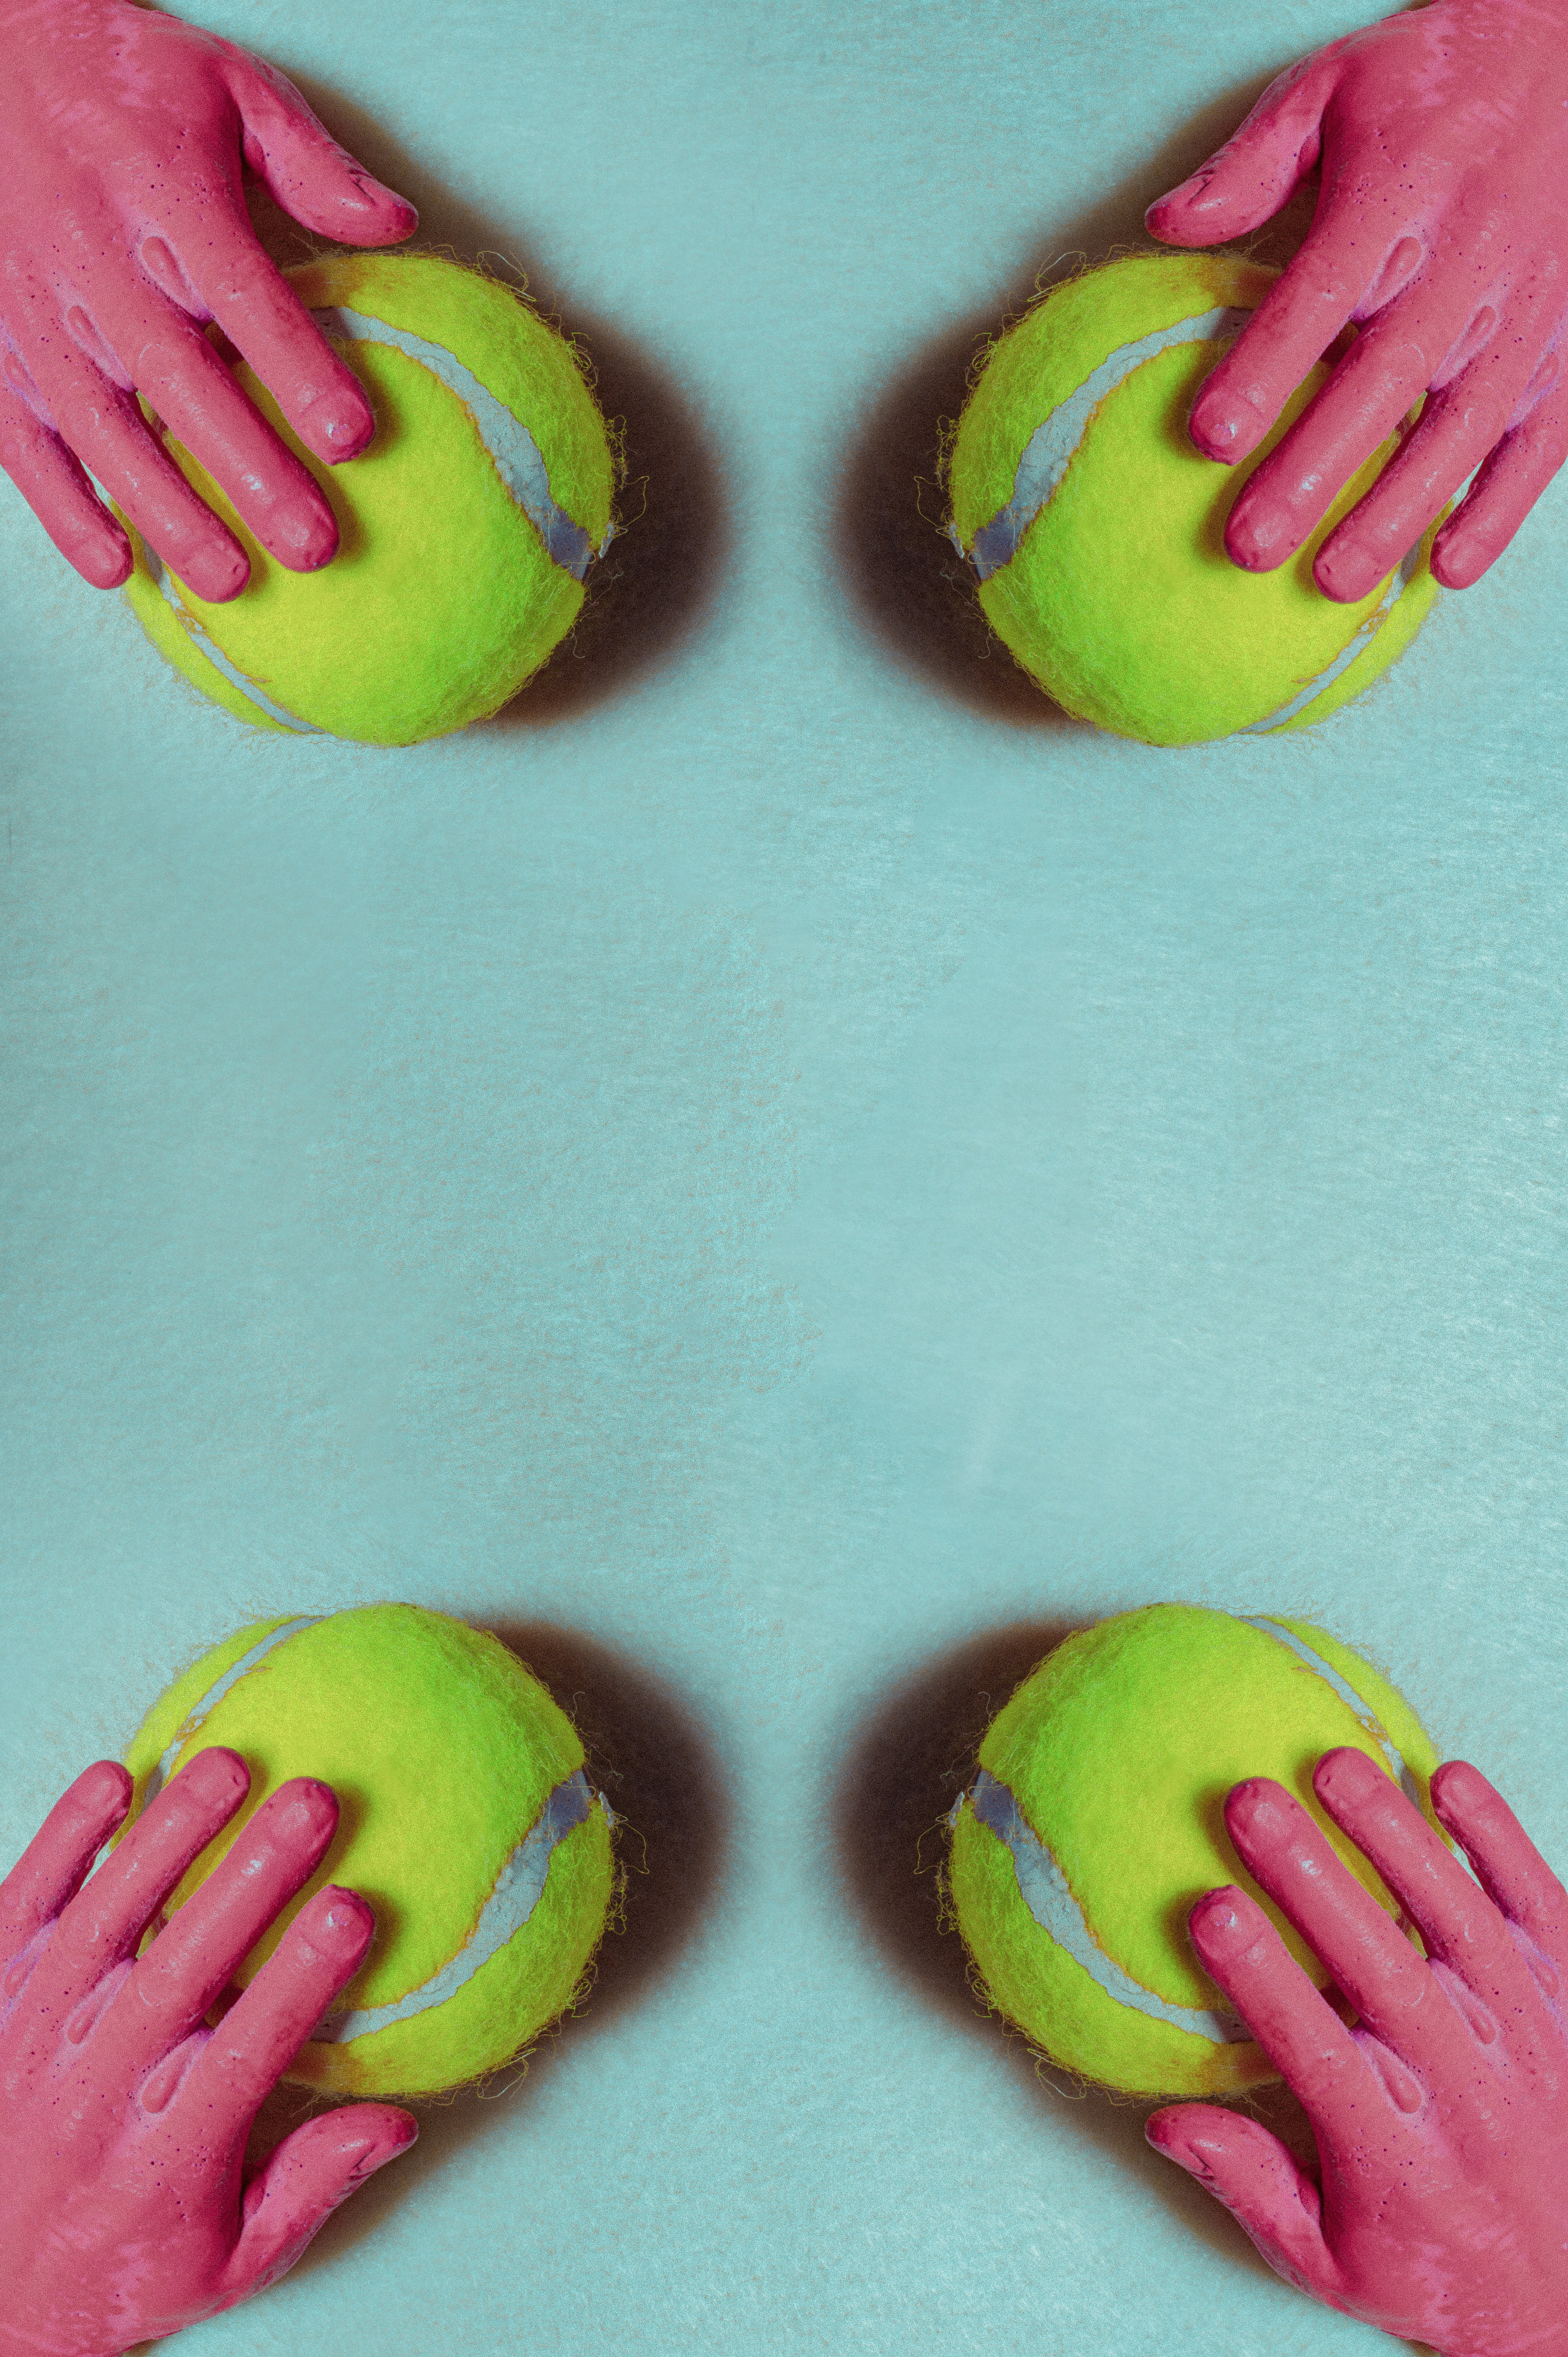 Four red hands holding a yellow flourescent tennis balls